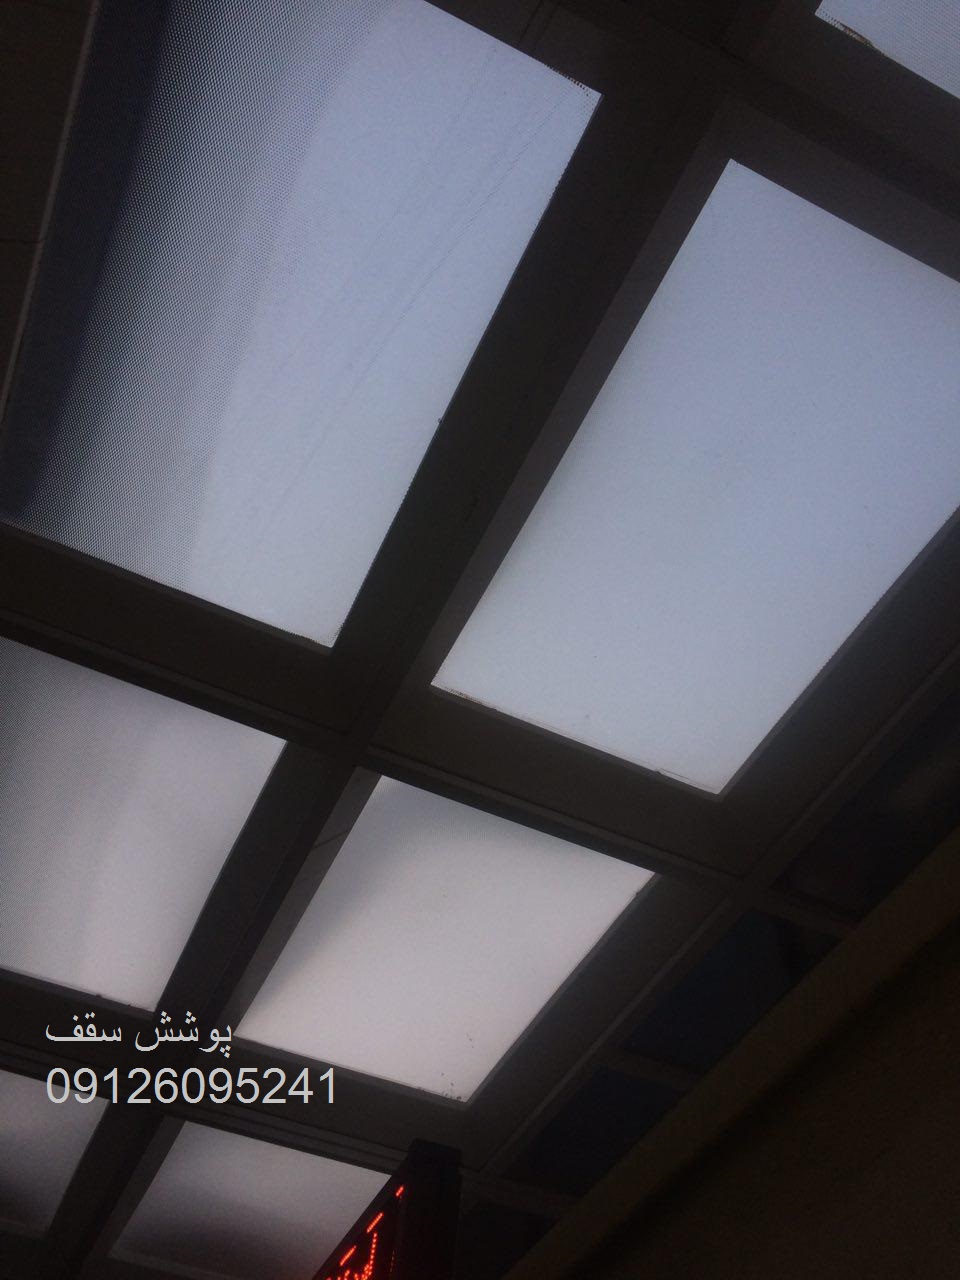 سقف پاسیو ارزان با نورگیر حبابی با بهترین قیمت و بالاترین کیفیت در مجموعه پوشش سقف